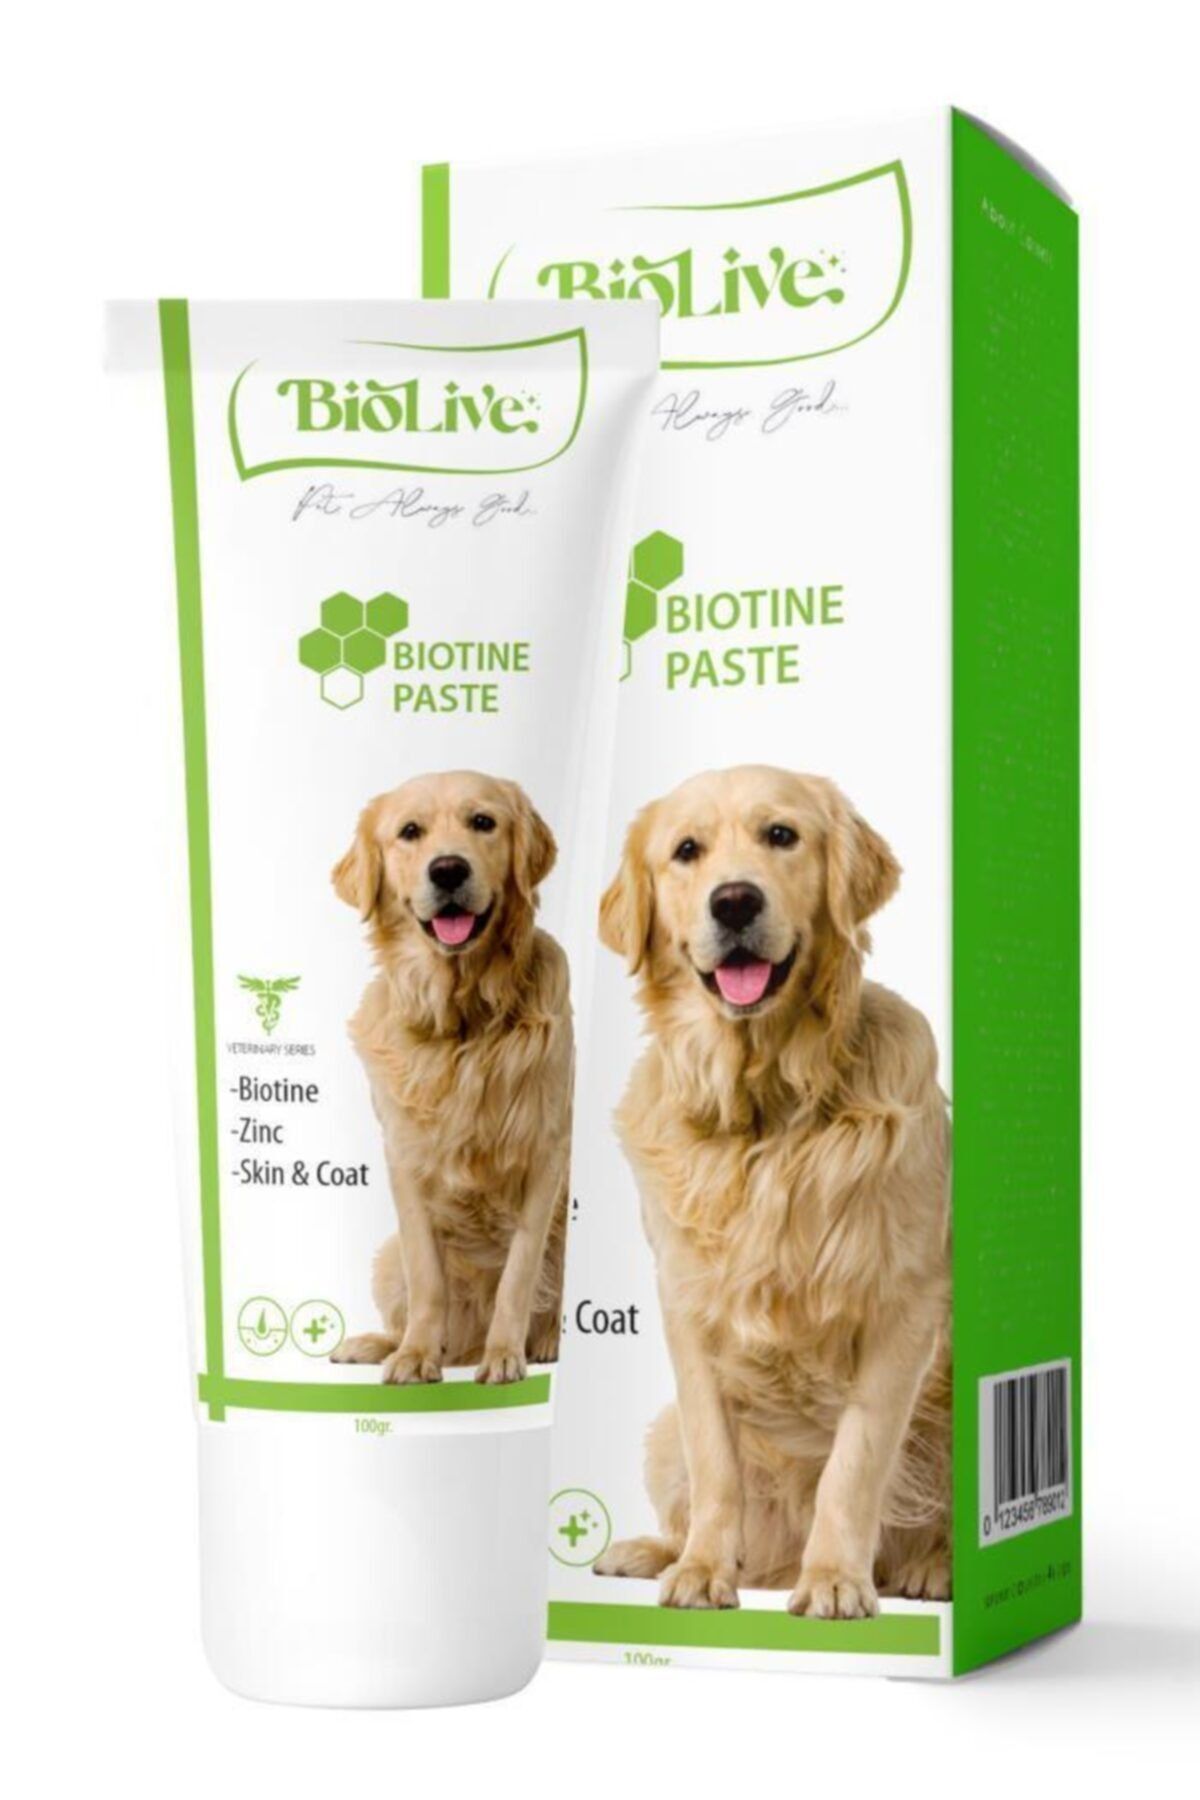 Biolive Köpekler Için Biotin Deri Ve Tüy Sağlığı Paste 100gr